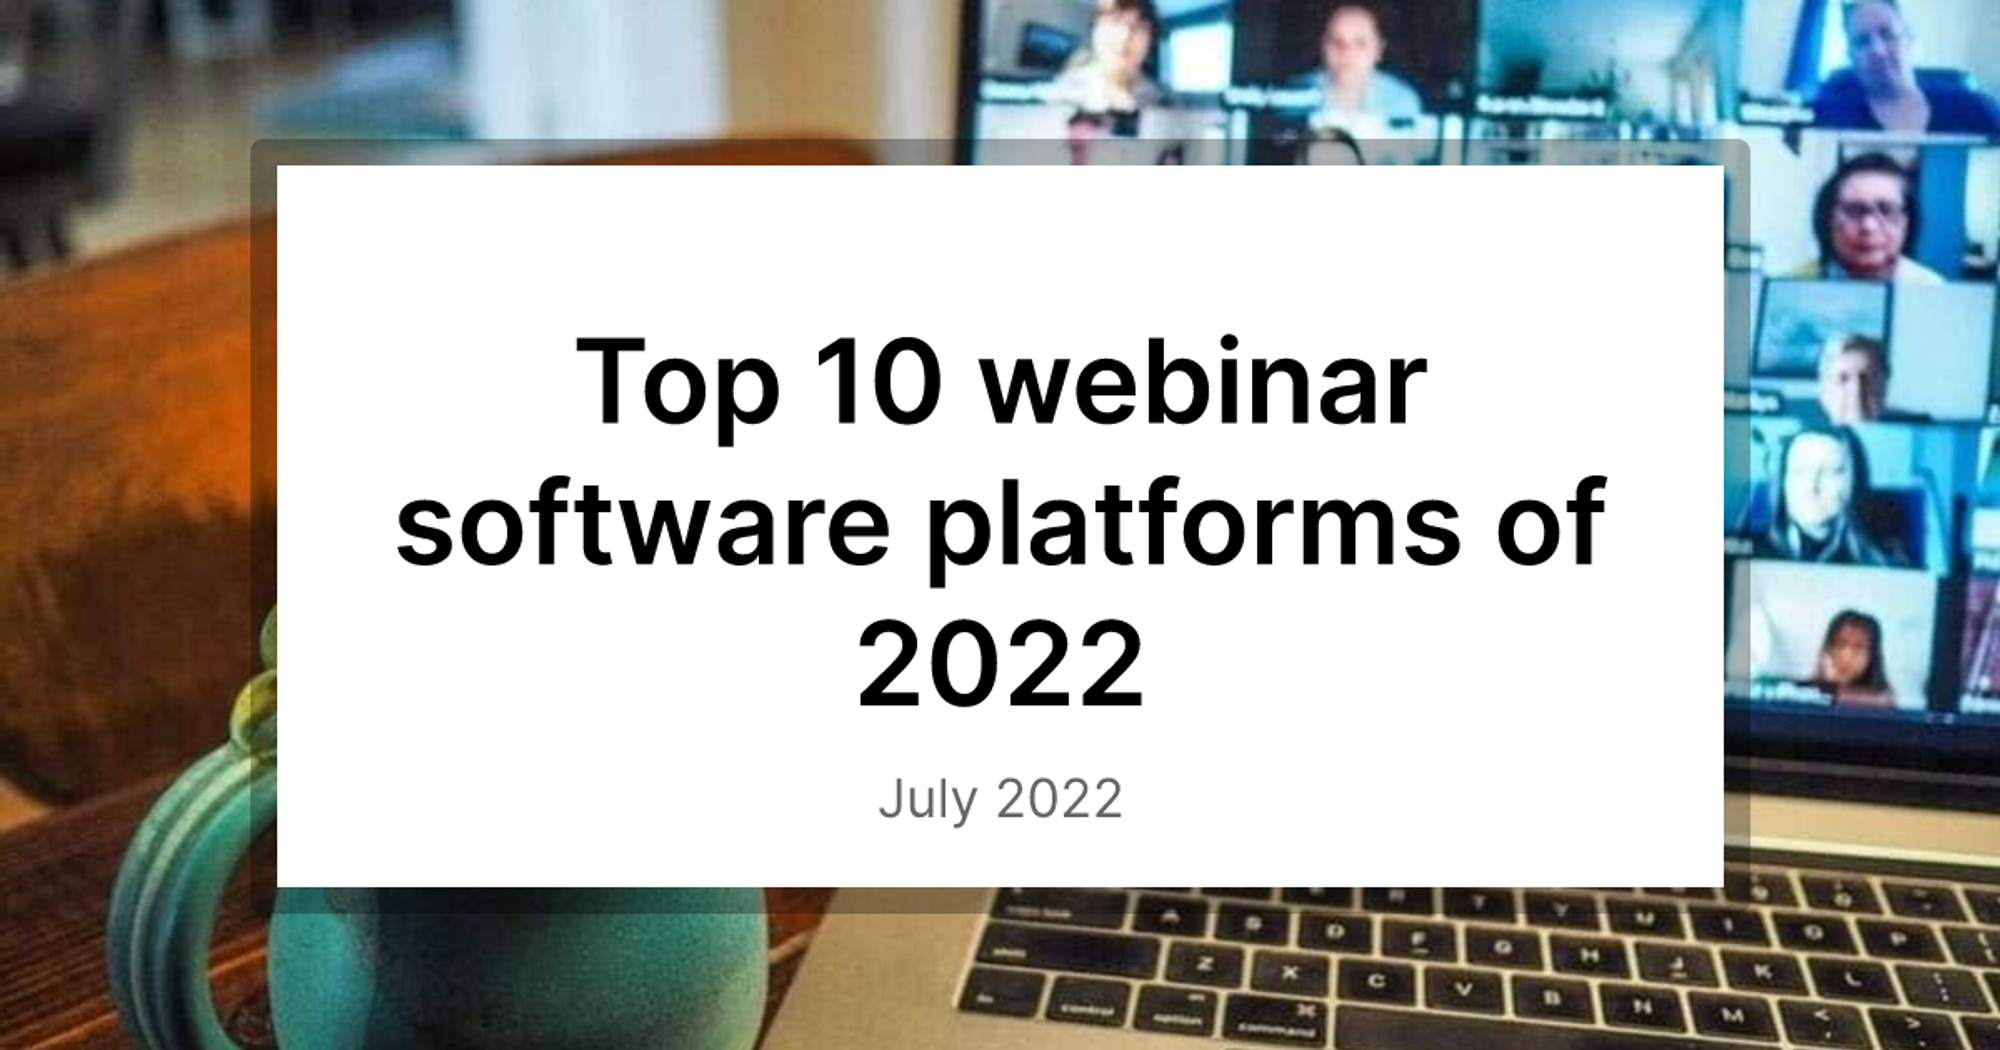 Top 10 webinar software platforms of 2022